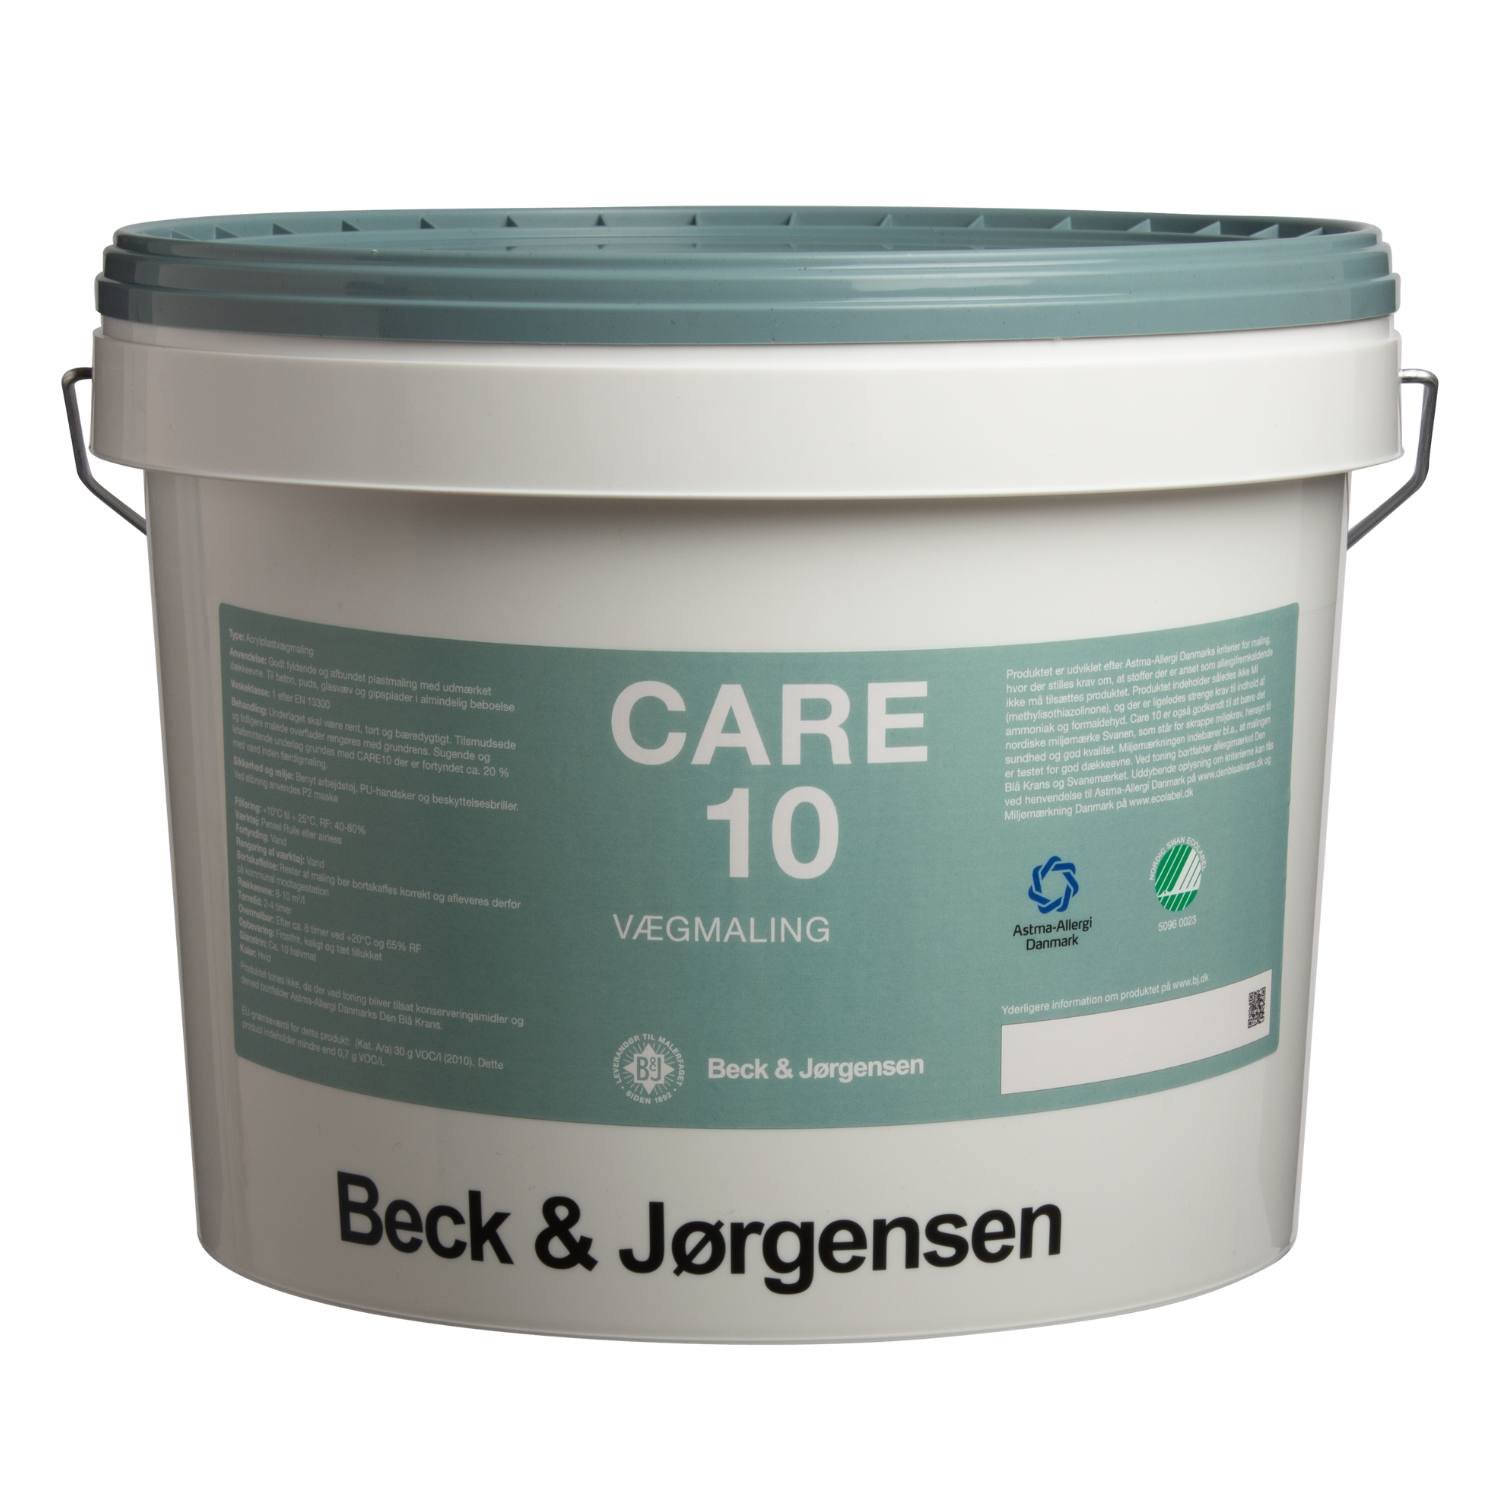 Allergivenlig maling, Care 10 - Maling og spartel fra Beck & Jørgensen